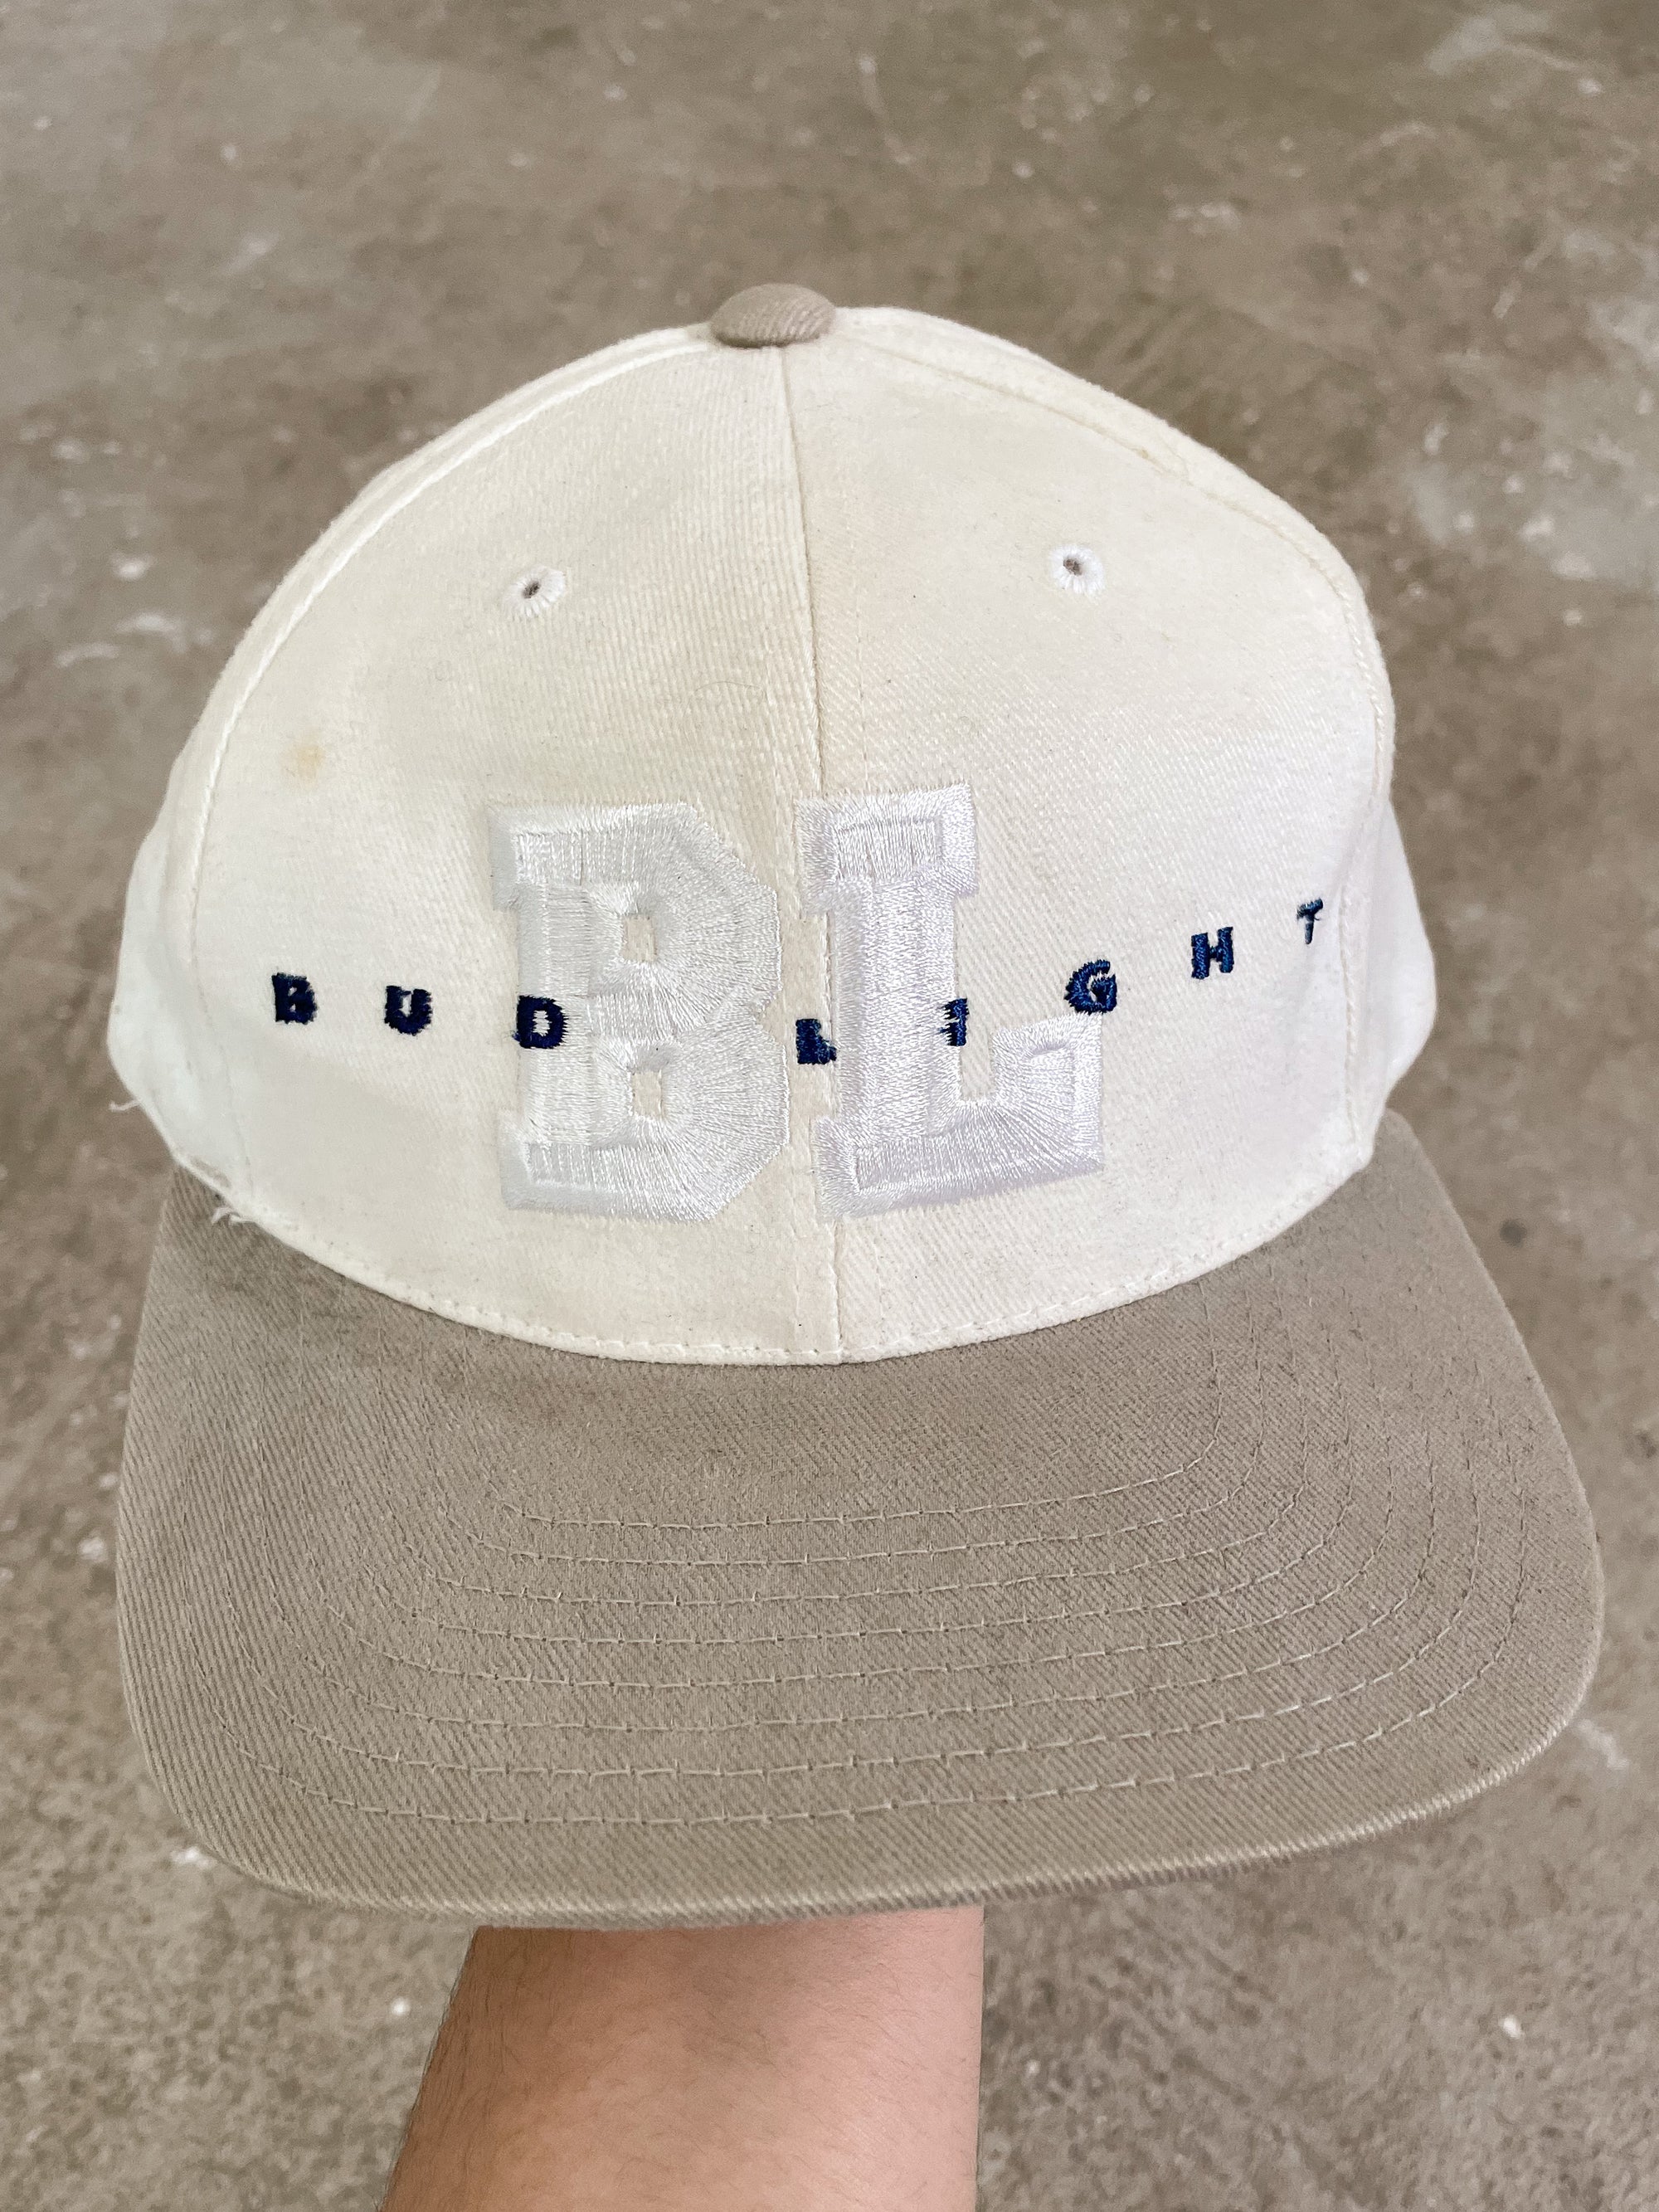 1990s “Bud Light” Trucker Hat